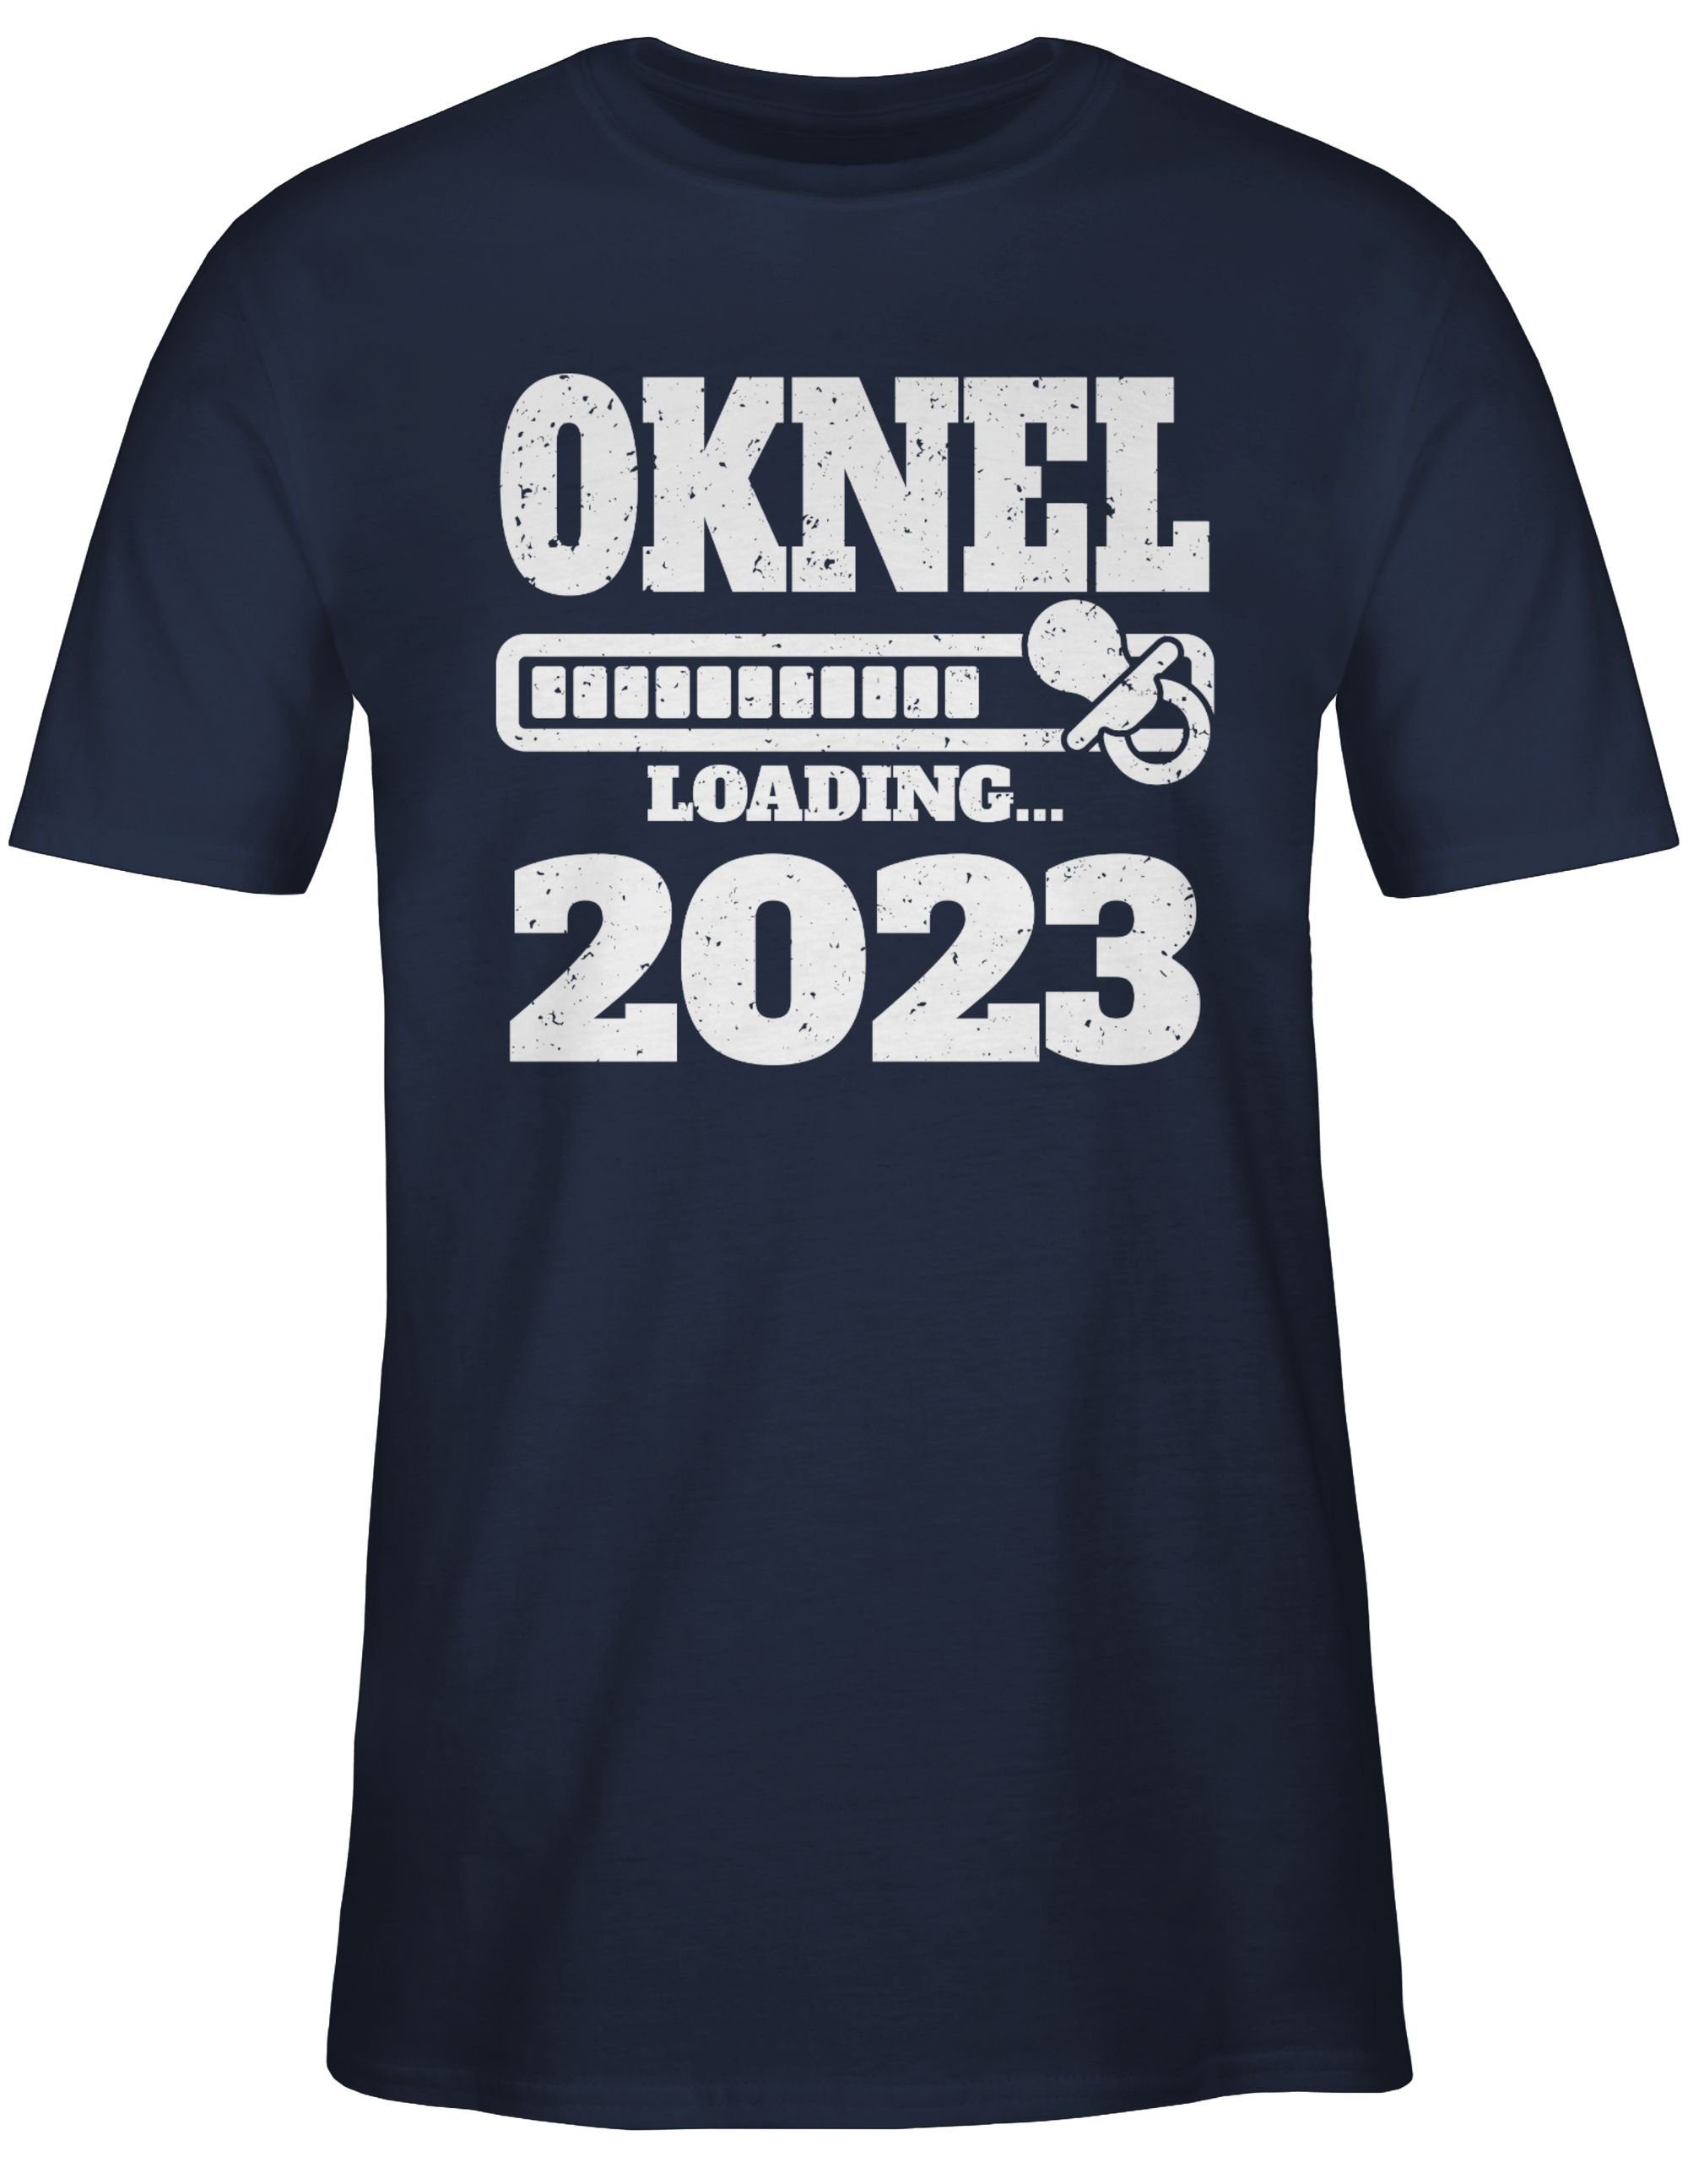 und Onkel Navy T-Shirt loading 3 mit 2023 Schnuller Shirtracer Bruder Onkel Blau Geschenk